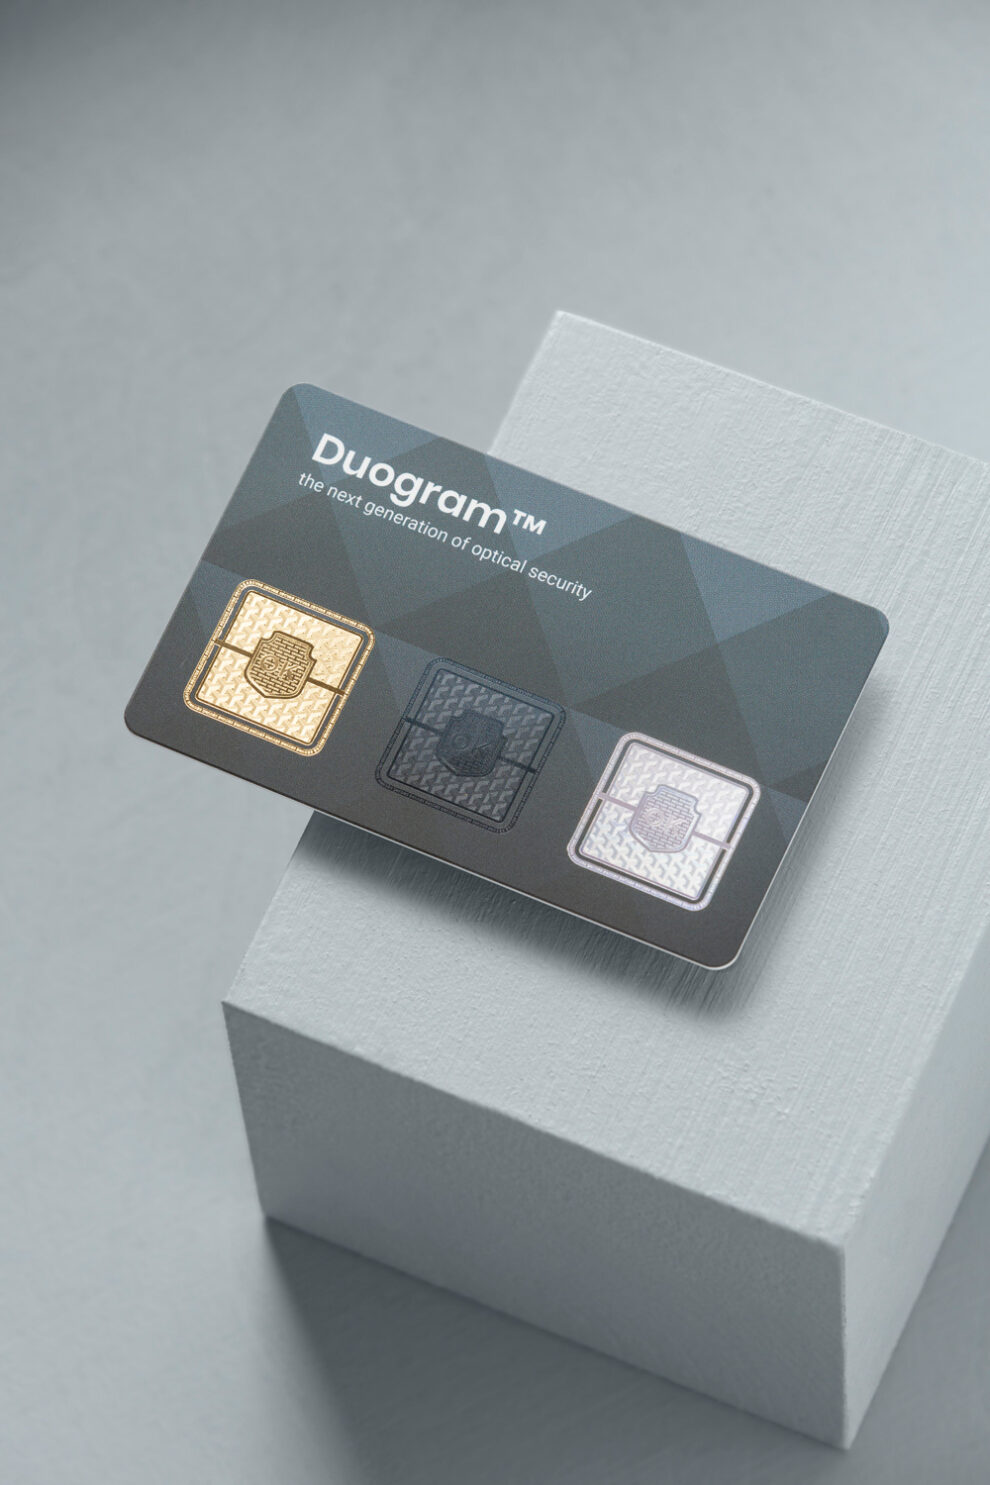 PCS bietet für RFID-Karten jetzt eine Ausstattung mit Duogram an. Individuelles Duogram erhöht zudem den Kopierschutz.